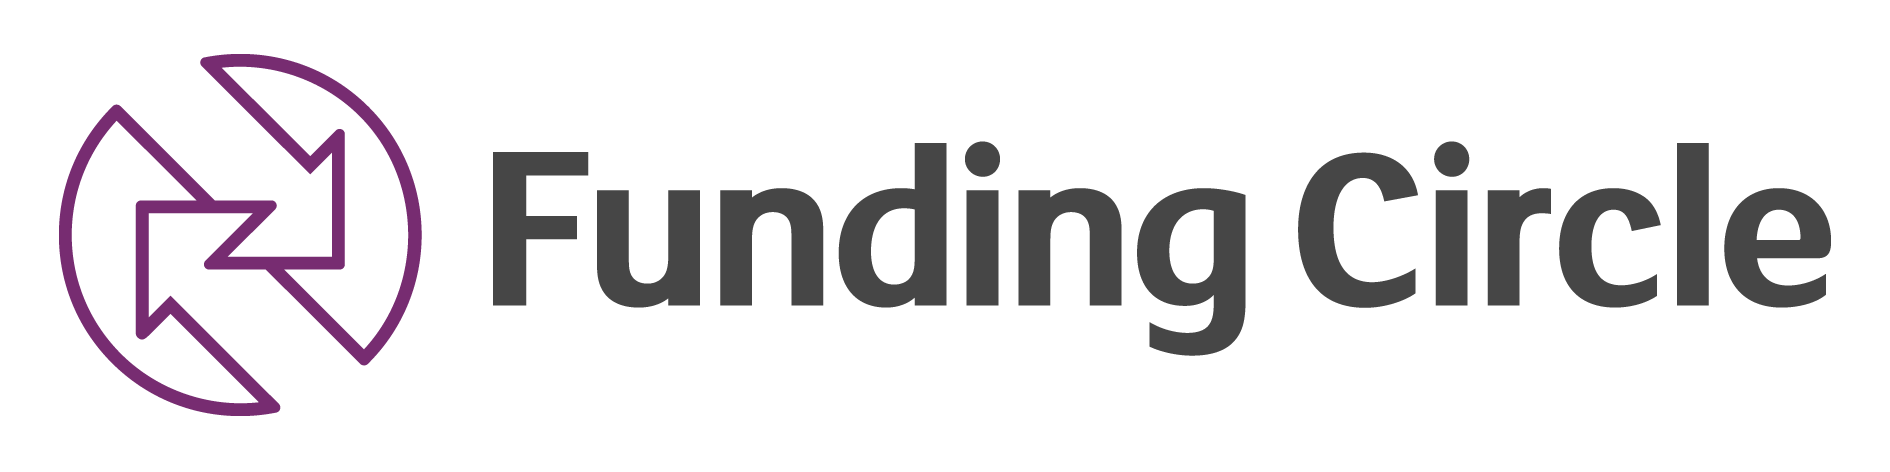 Funding Circle logo.png